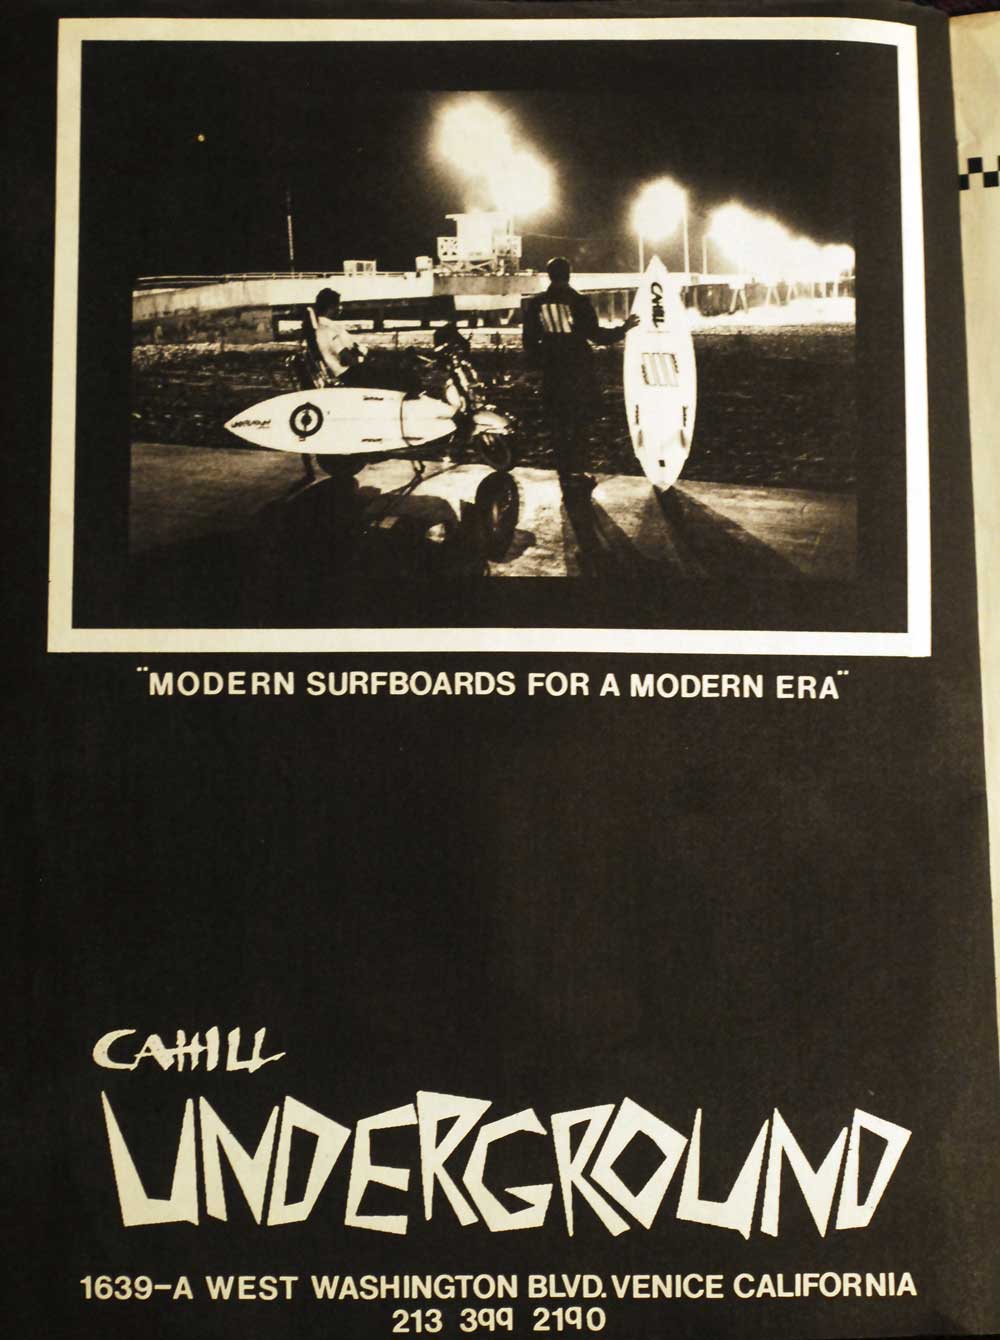 Cahill Underground Ad in Twist Magazine, 1983